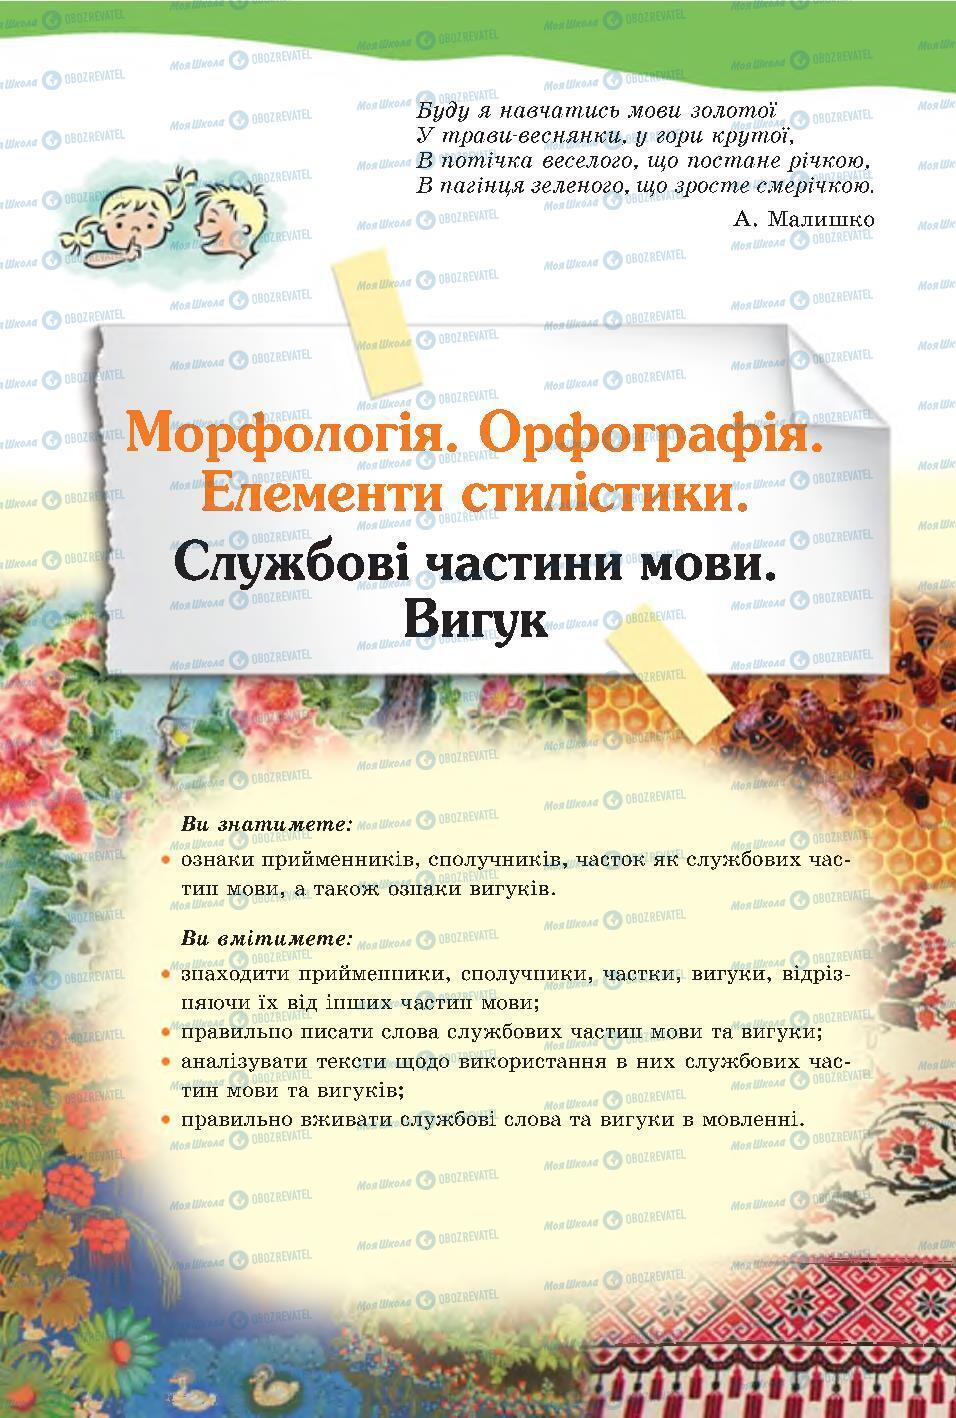 Підручники Українська мова 7 клас сторінка 109